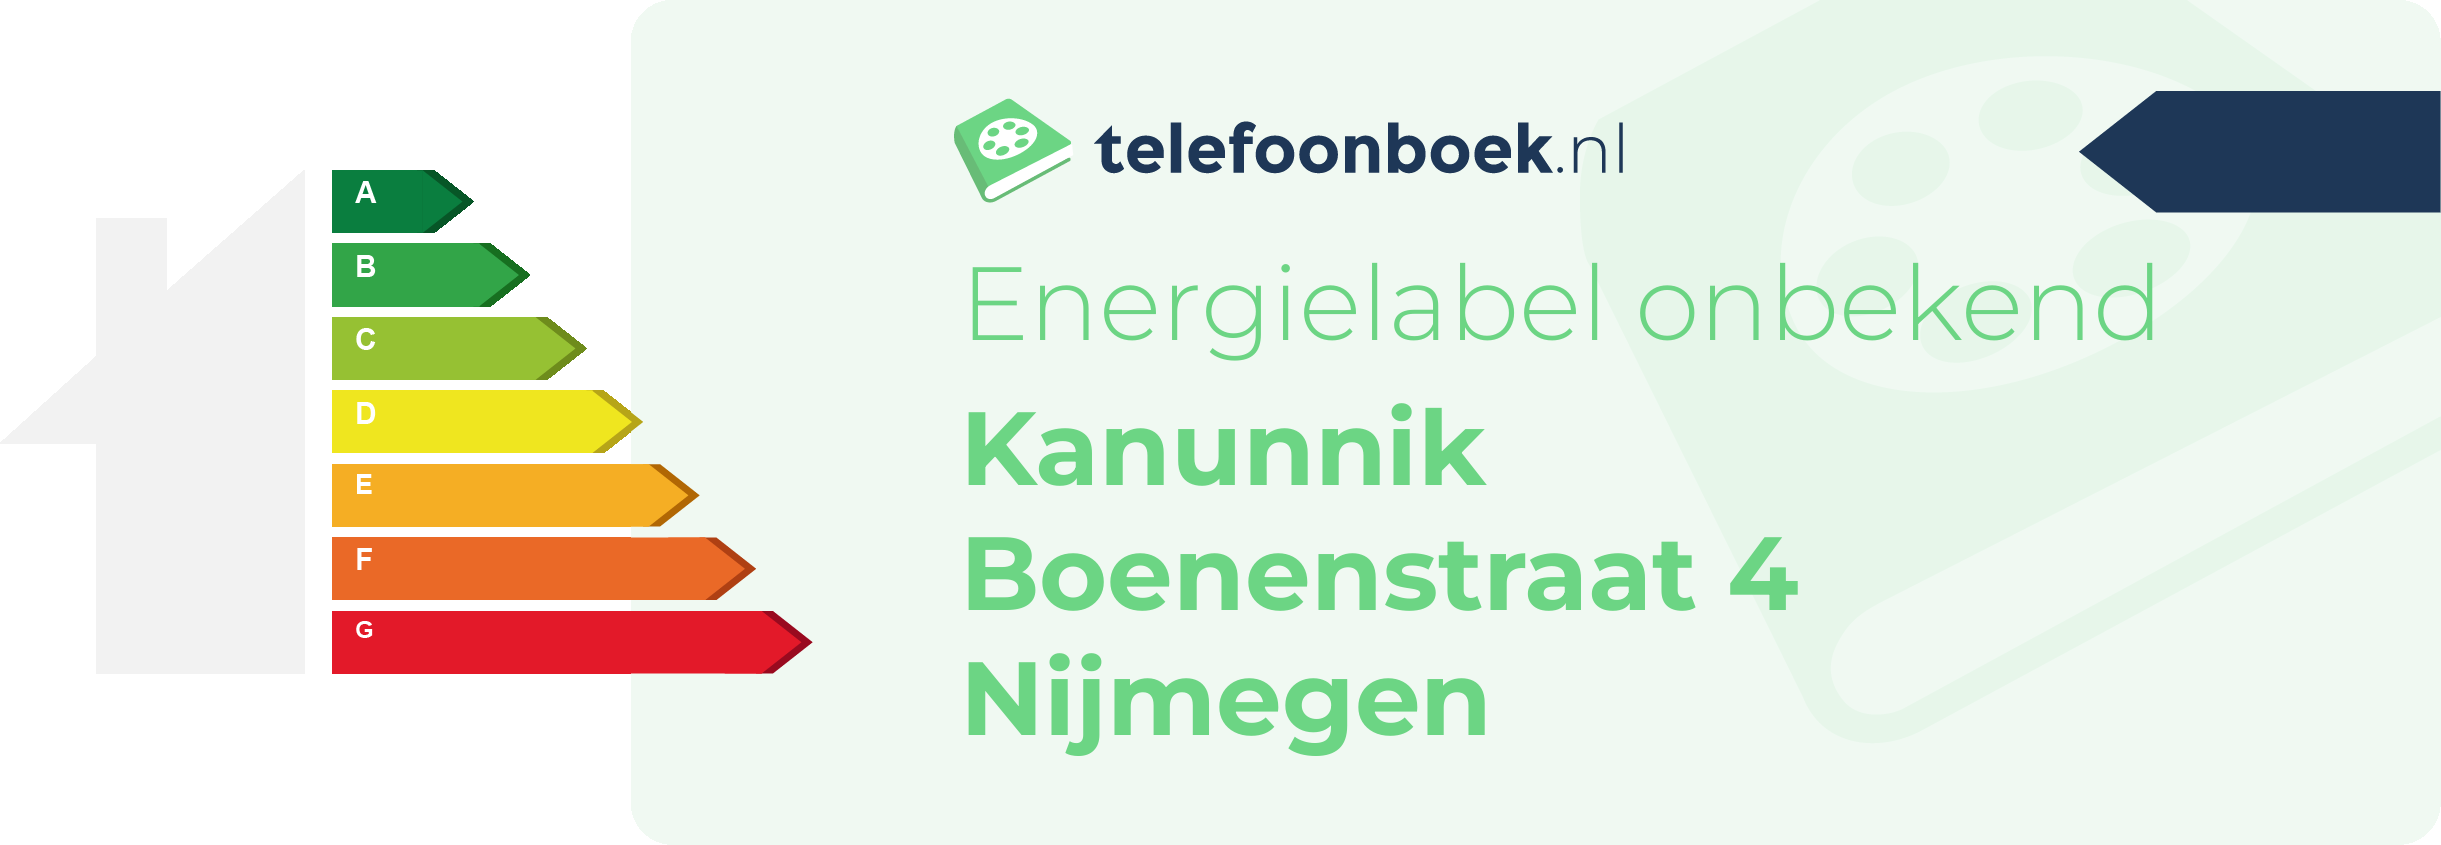 Energielabel Kanunnik Boenenstraat 4 Nijmegen